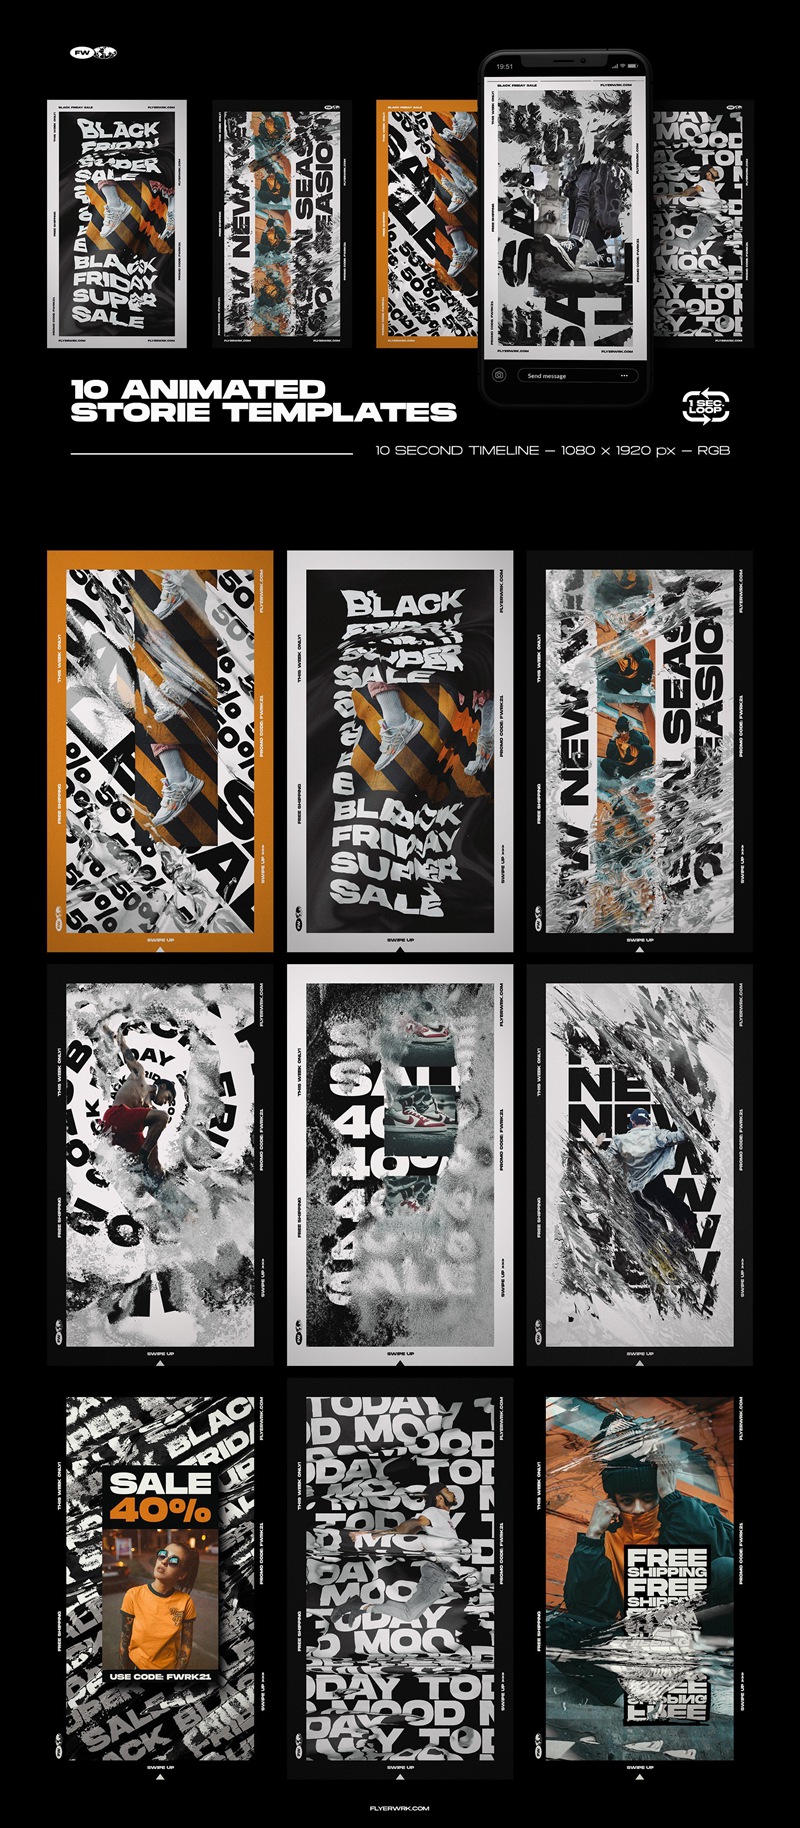 Flyerwrk 潮流炫酷水墨故障风品牌推广新媒体电商动态海报设计模板素材 设计素材 第9张